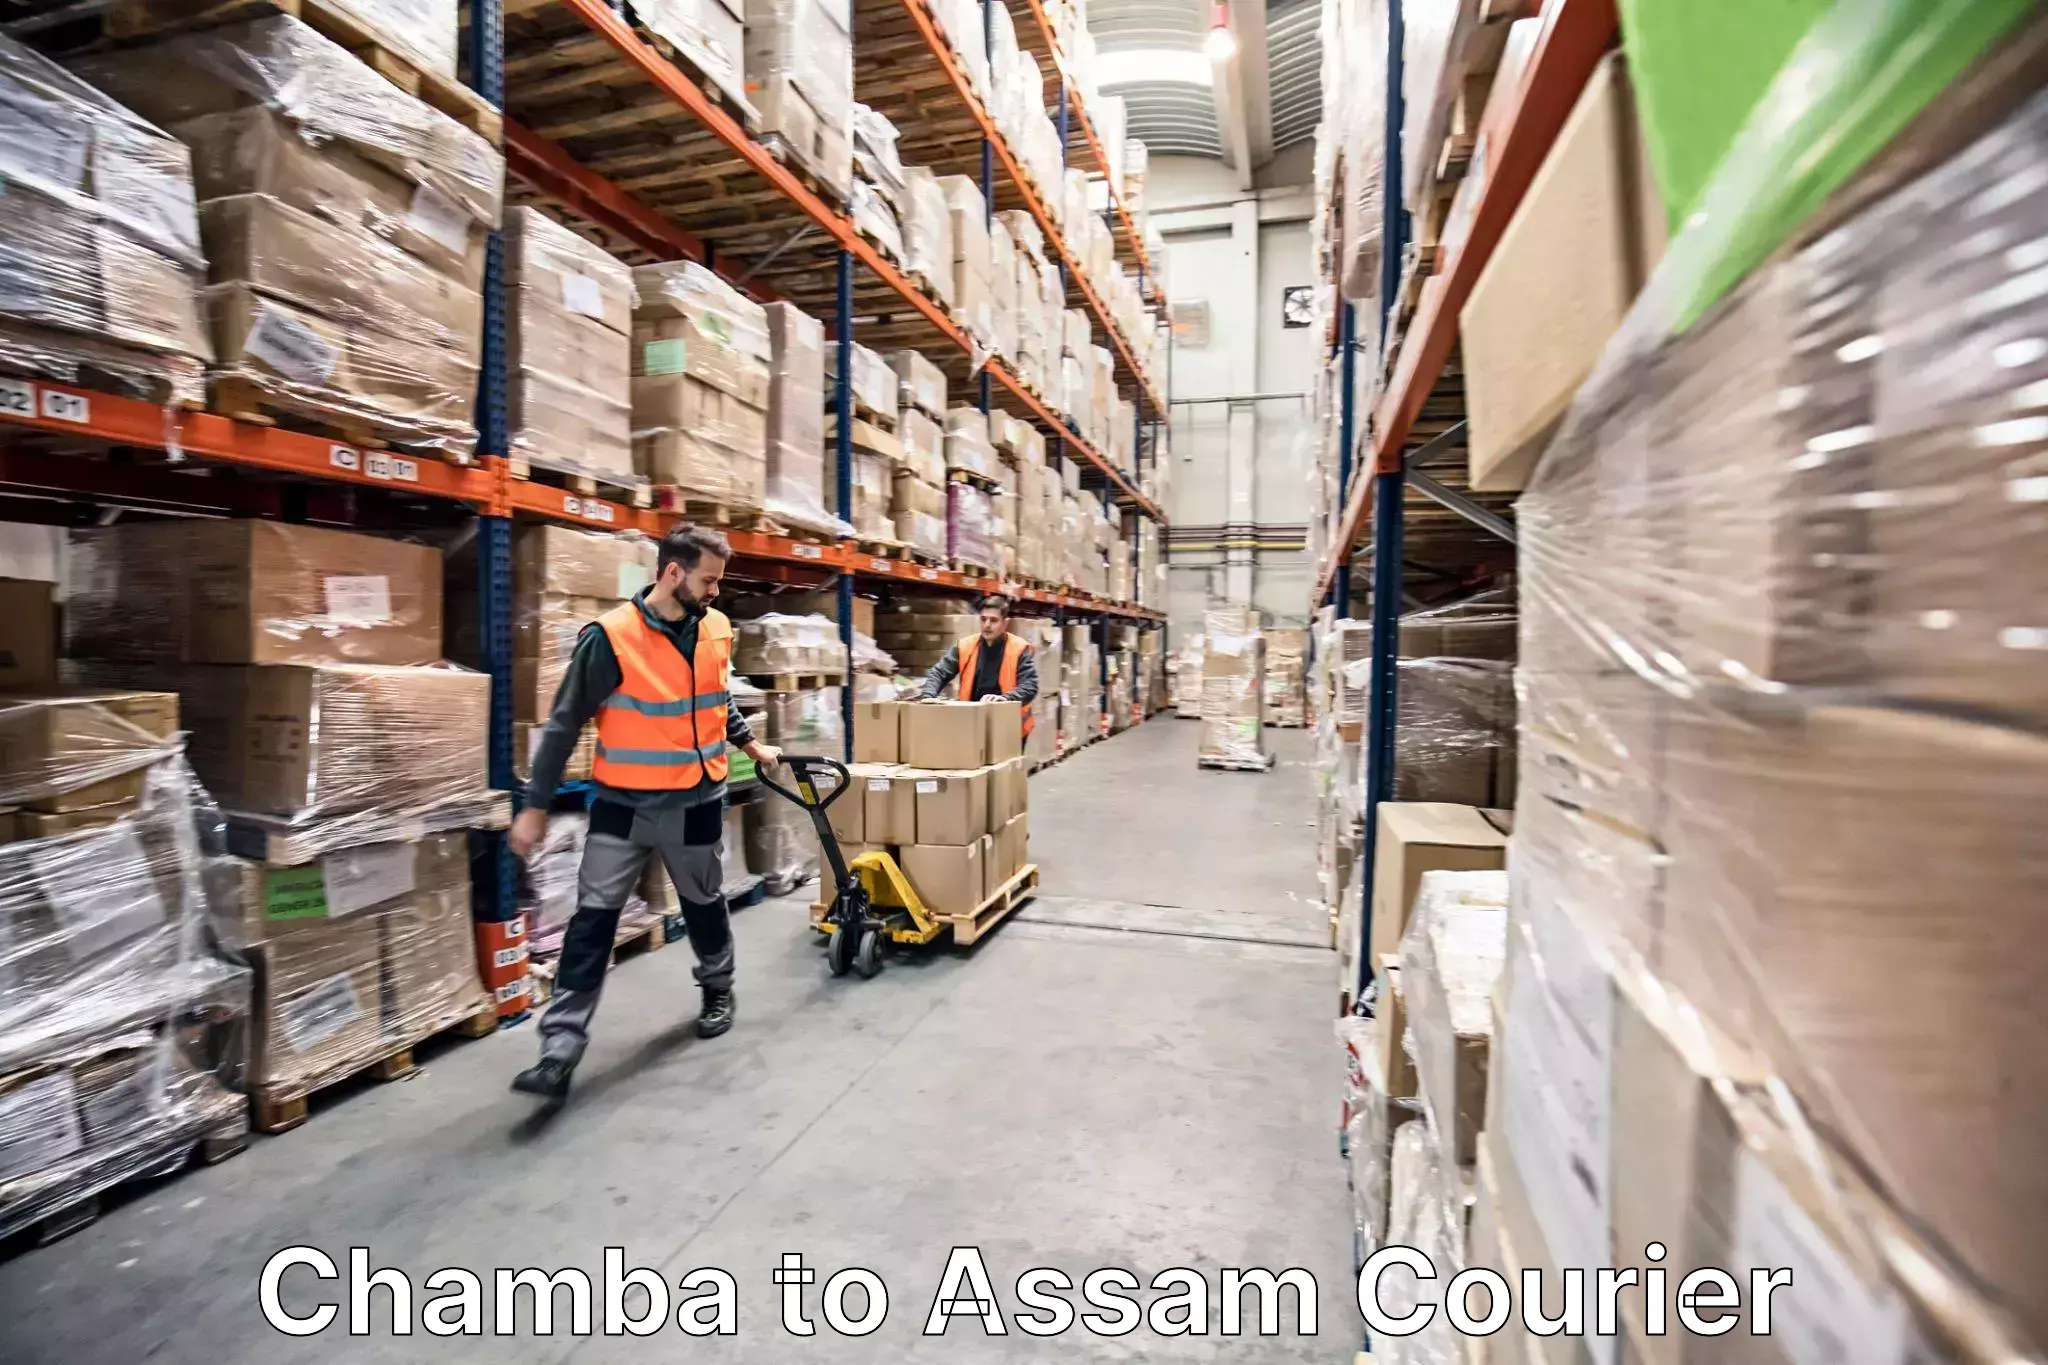 Furniture transport solutions Chamba to Amoni